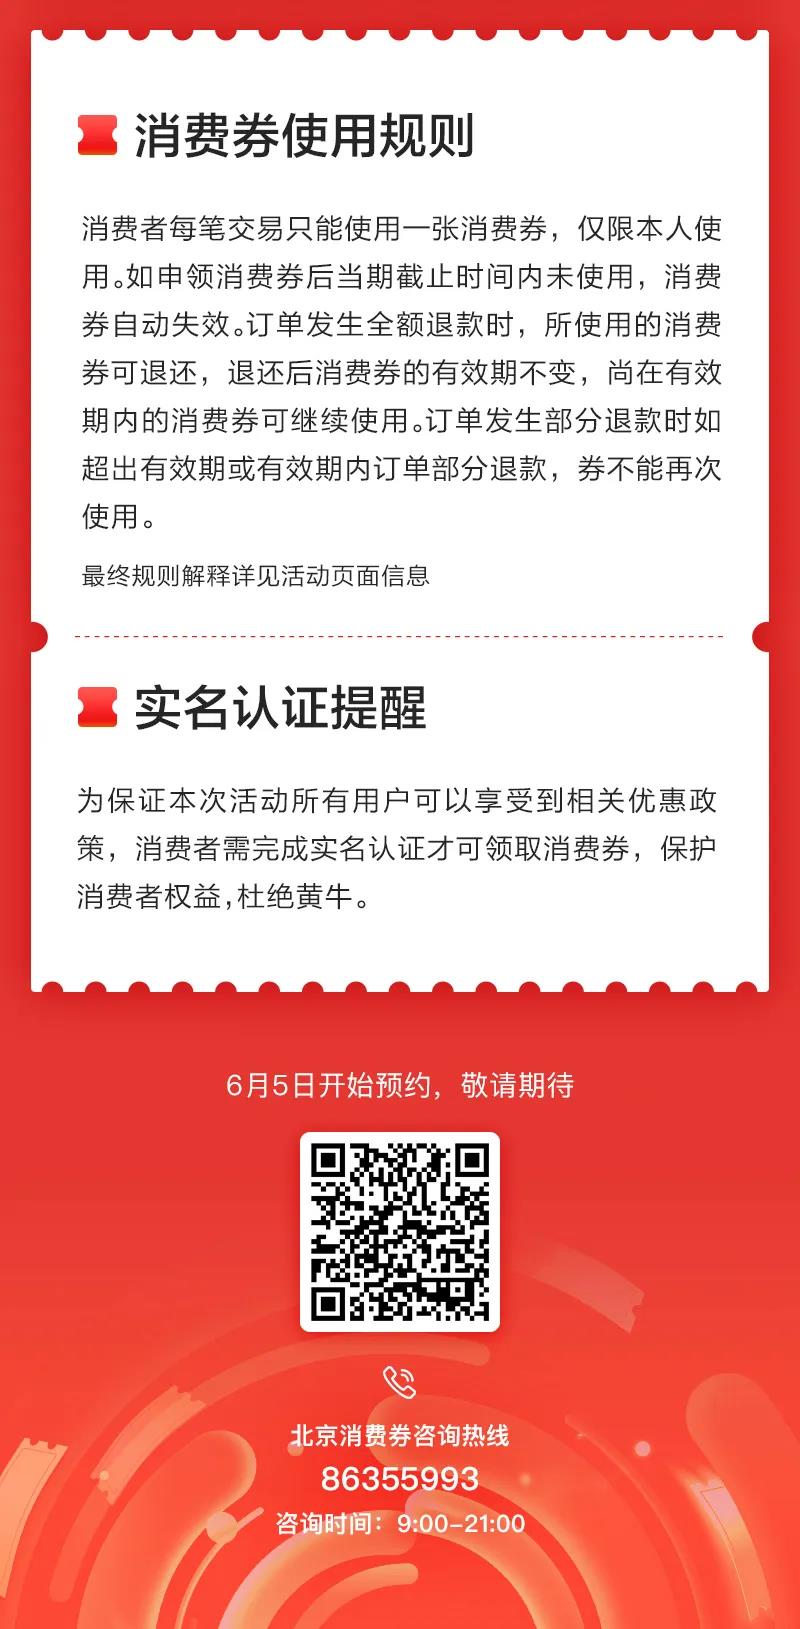 促消费助经济 北京消费季6月6日启动 122亿元消费券将发放(图5)